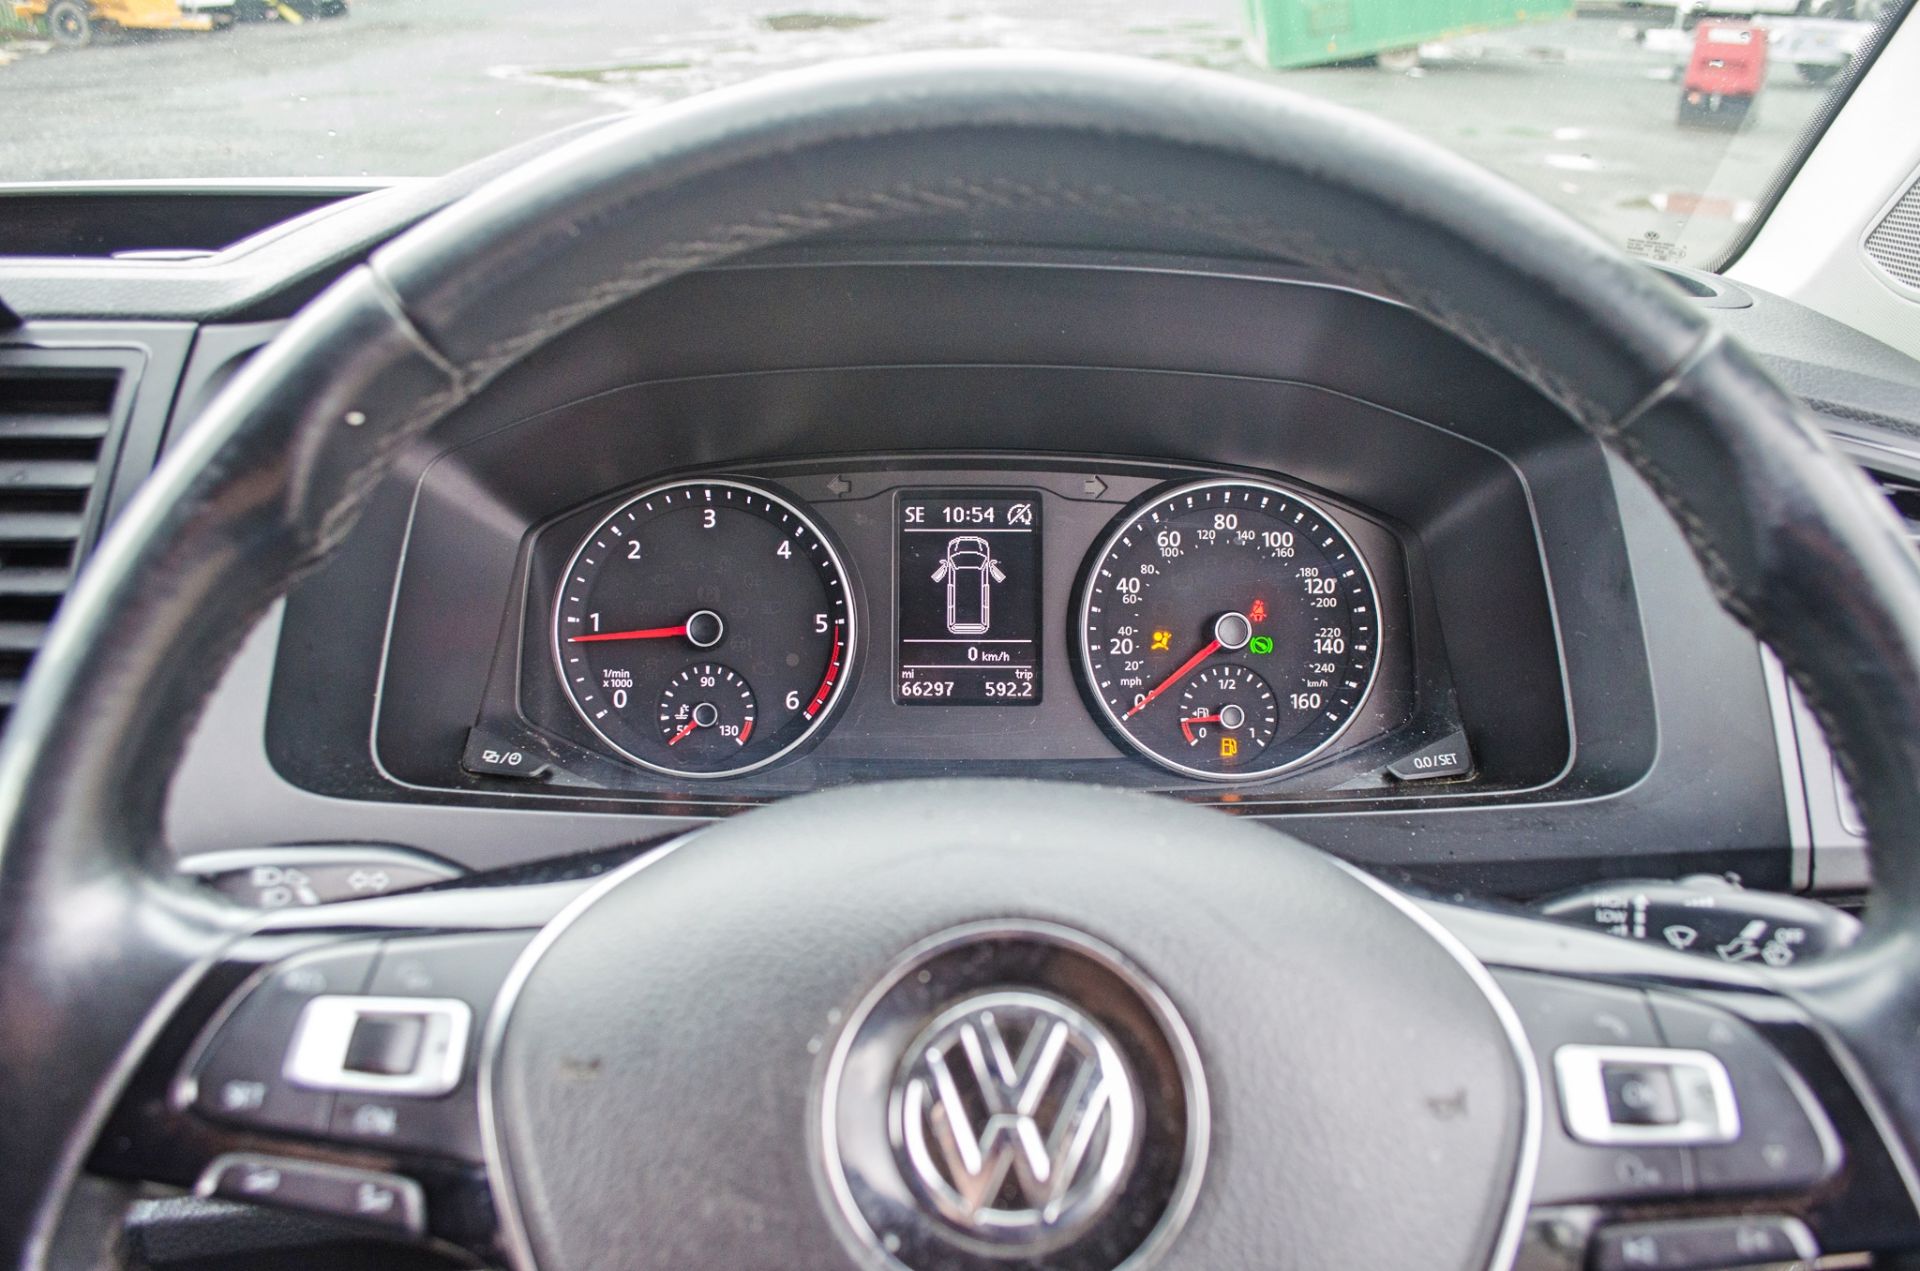 Volkswagen Transporter T32 High Line 2.0 TDI 204 BMT Auto panel van  Registration No: GC 18 HFN - Image 17 of 23